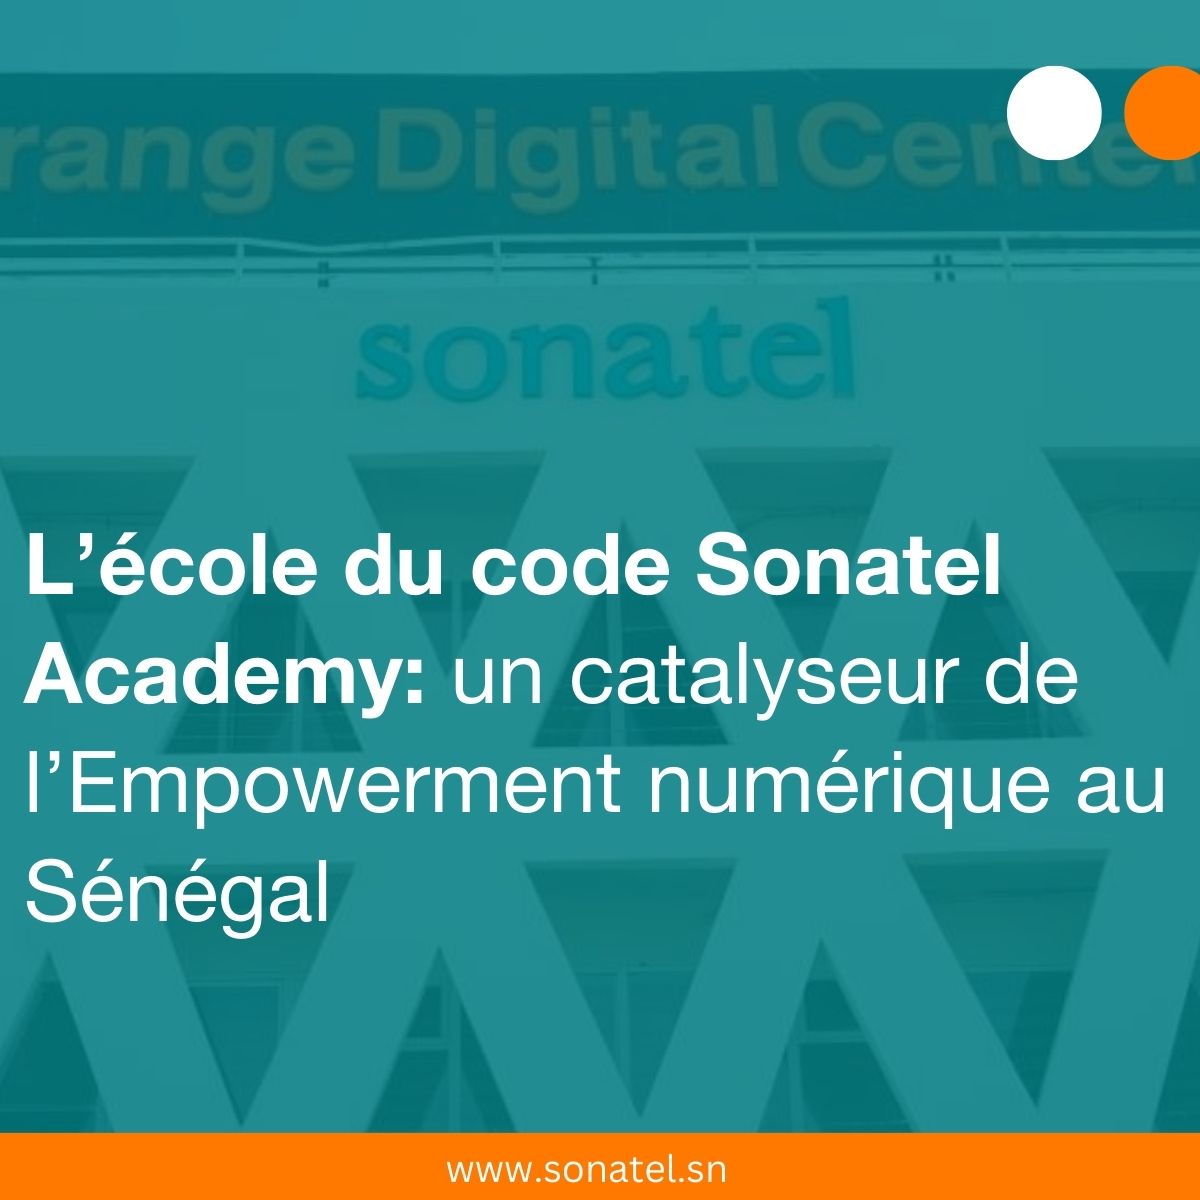 L’école du code Sonatel Academy au Sénégal